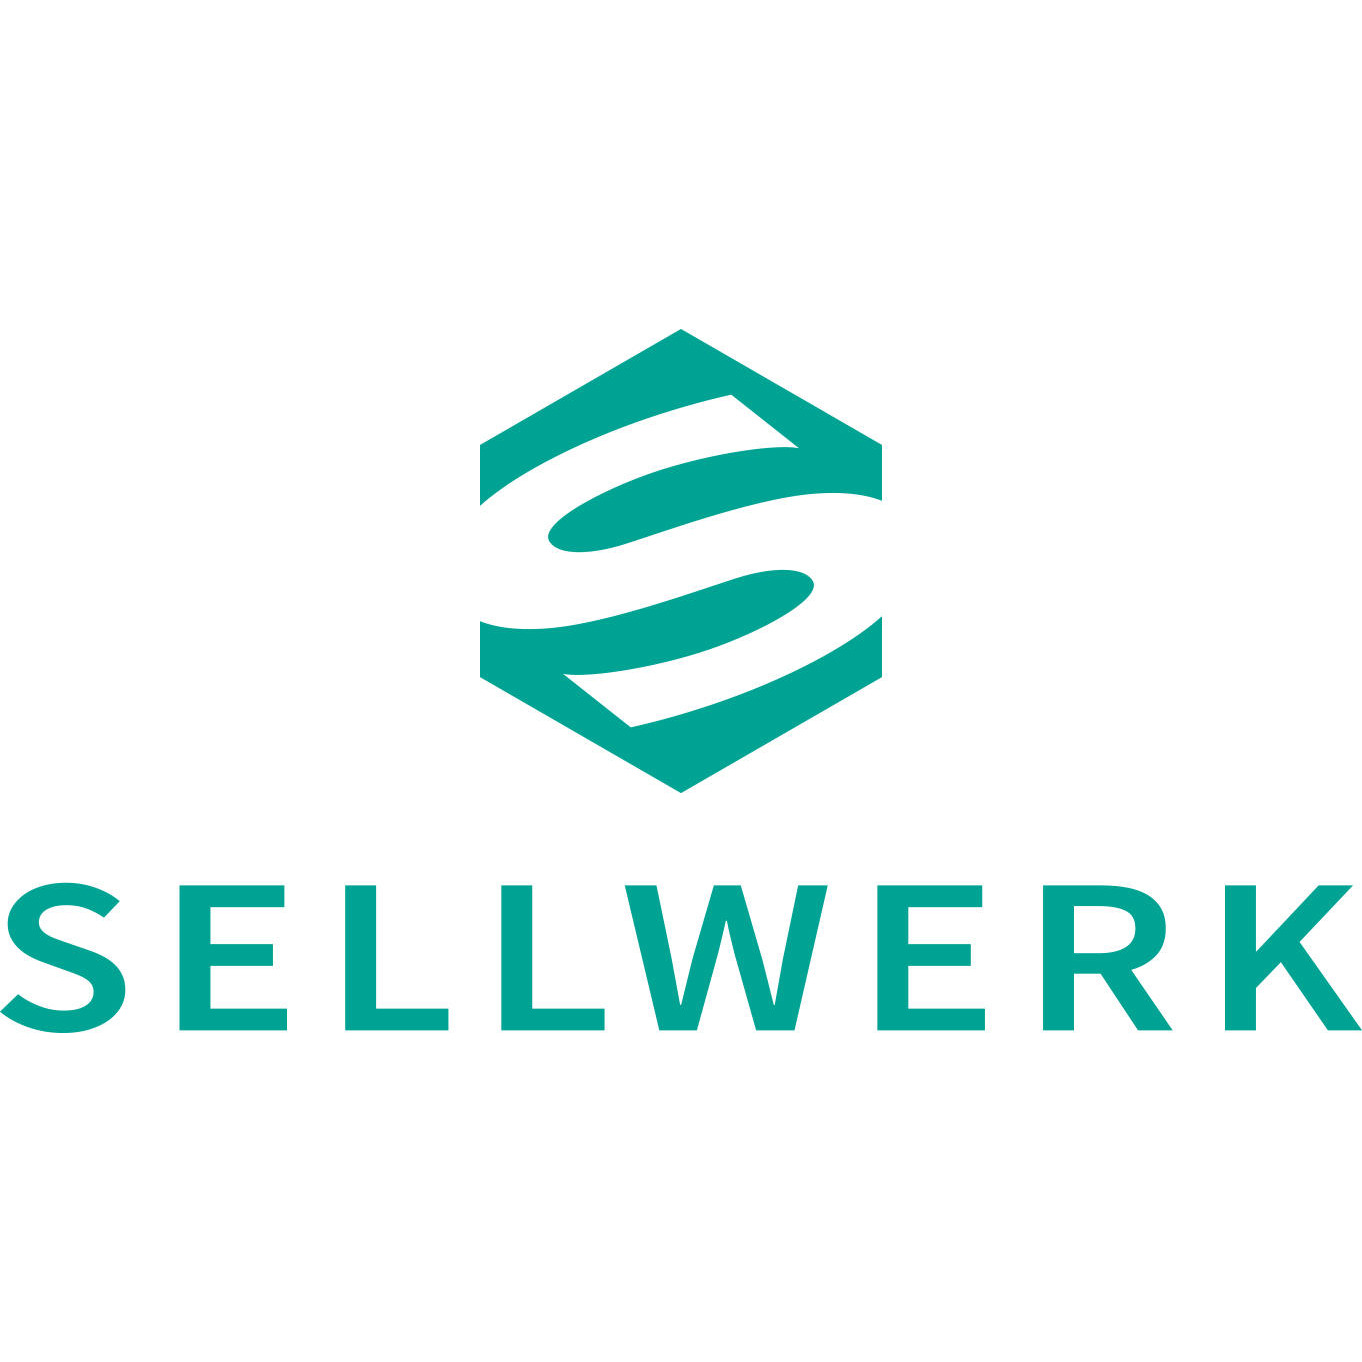 SELLWERK - Wiesbaden in Wiesbaden - Logo